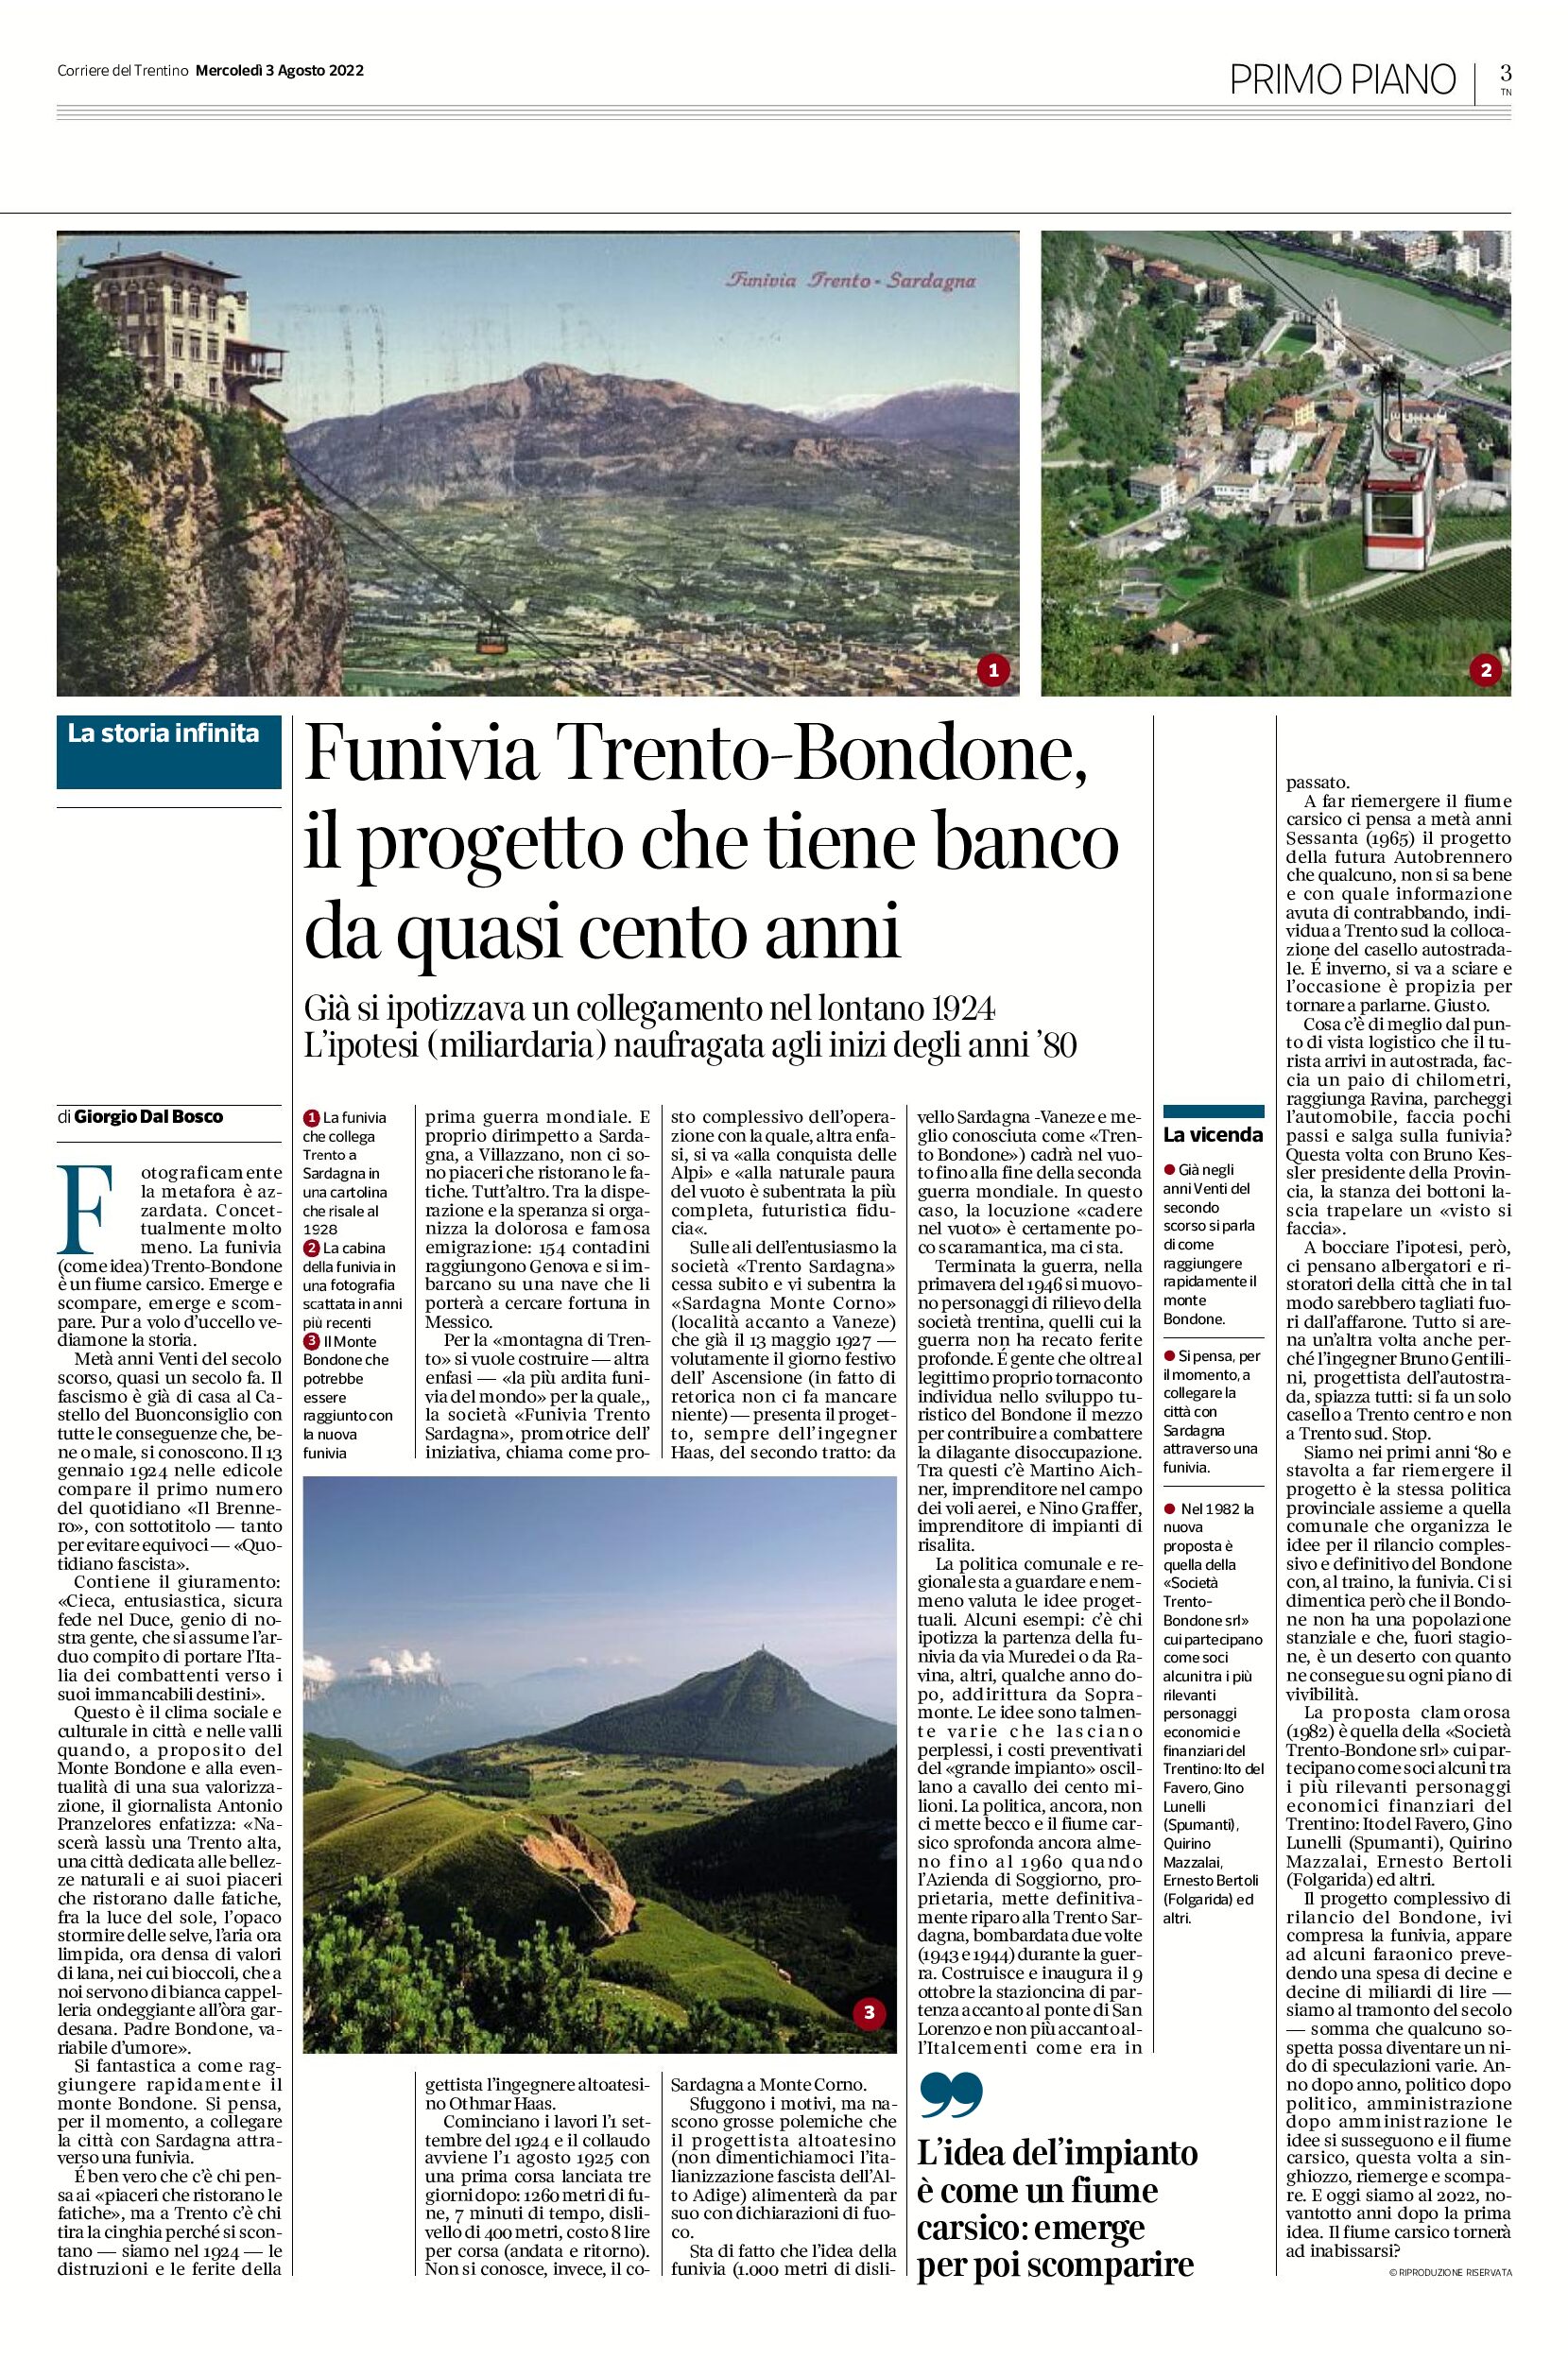 Funivia Trento-Bondone: il progetto che tiene banco da quasi cento anni